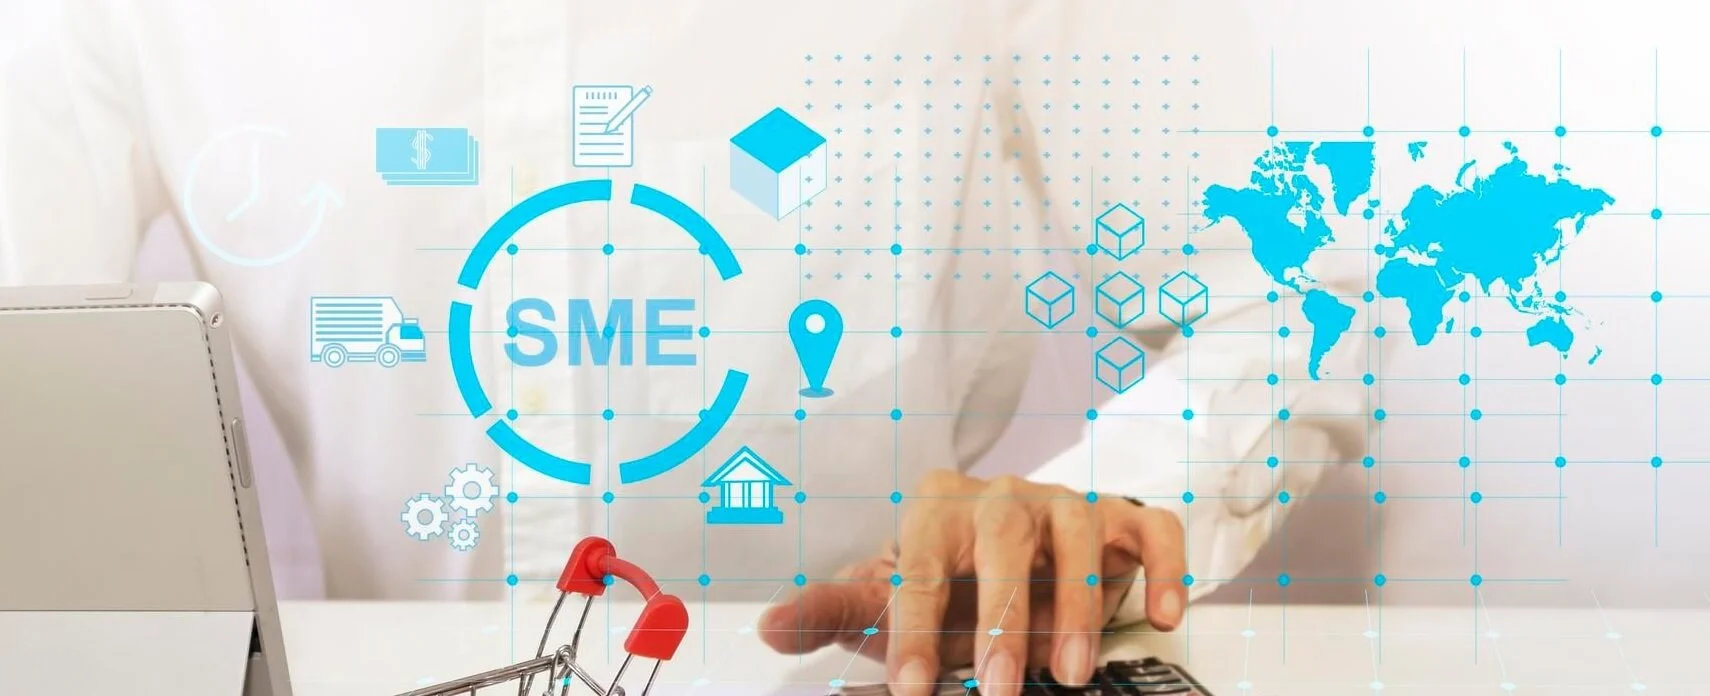 ธุรกิจ SMEs บริหารเป็น ยังไงก็รอด ด้วย NEXcloud ERP